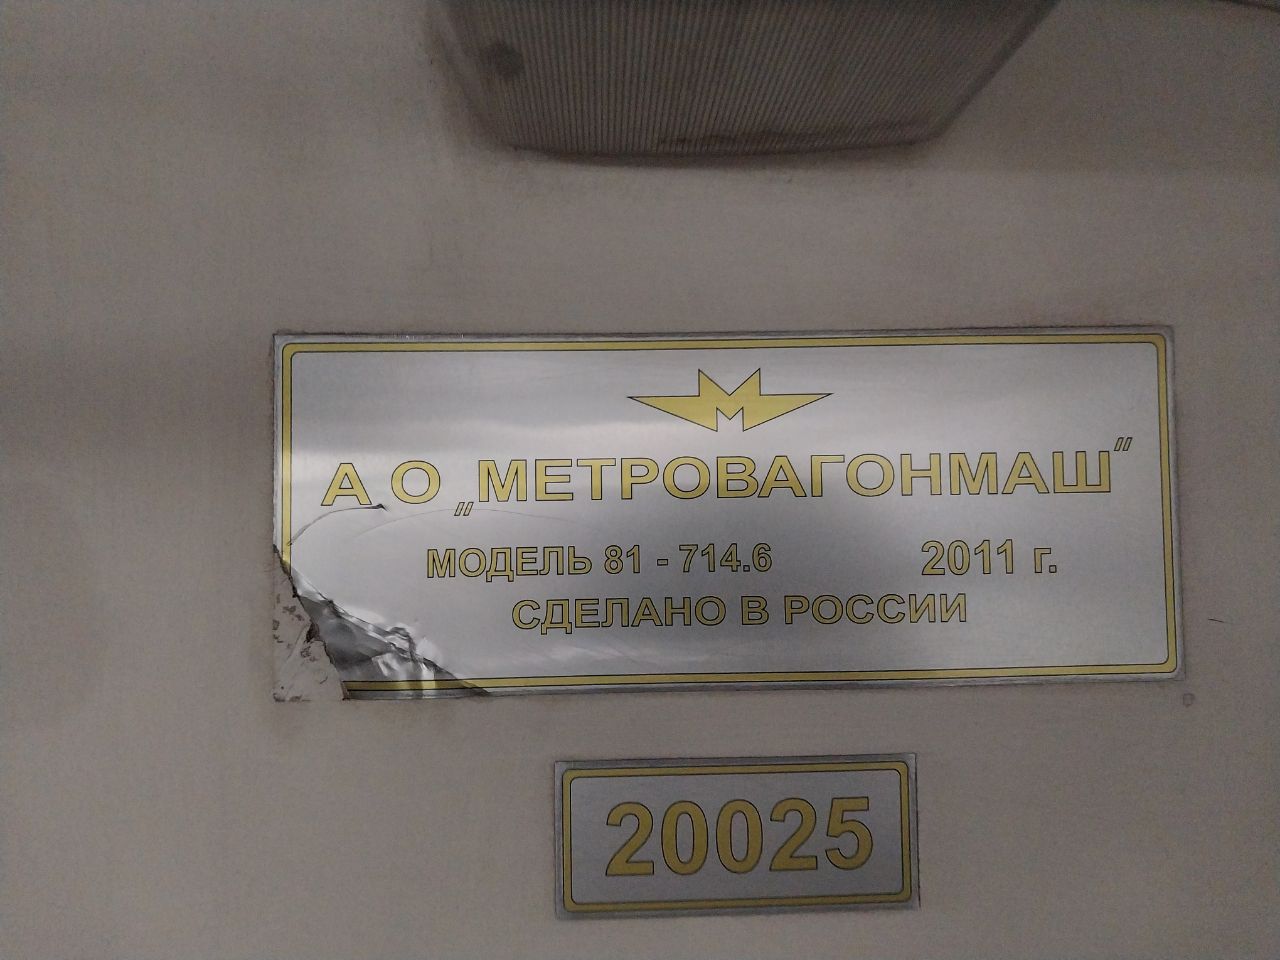 Москва, 81-714.6 № 20025